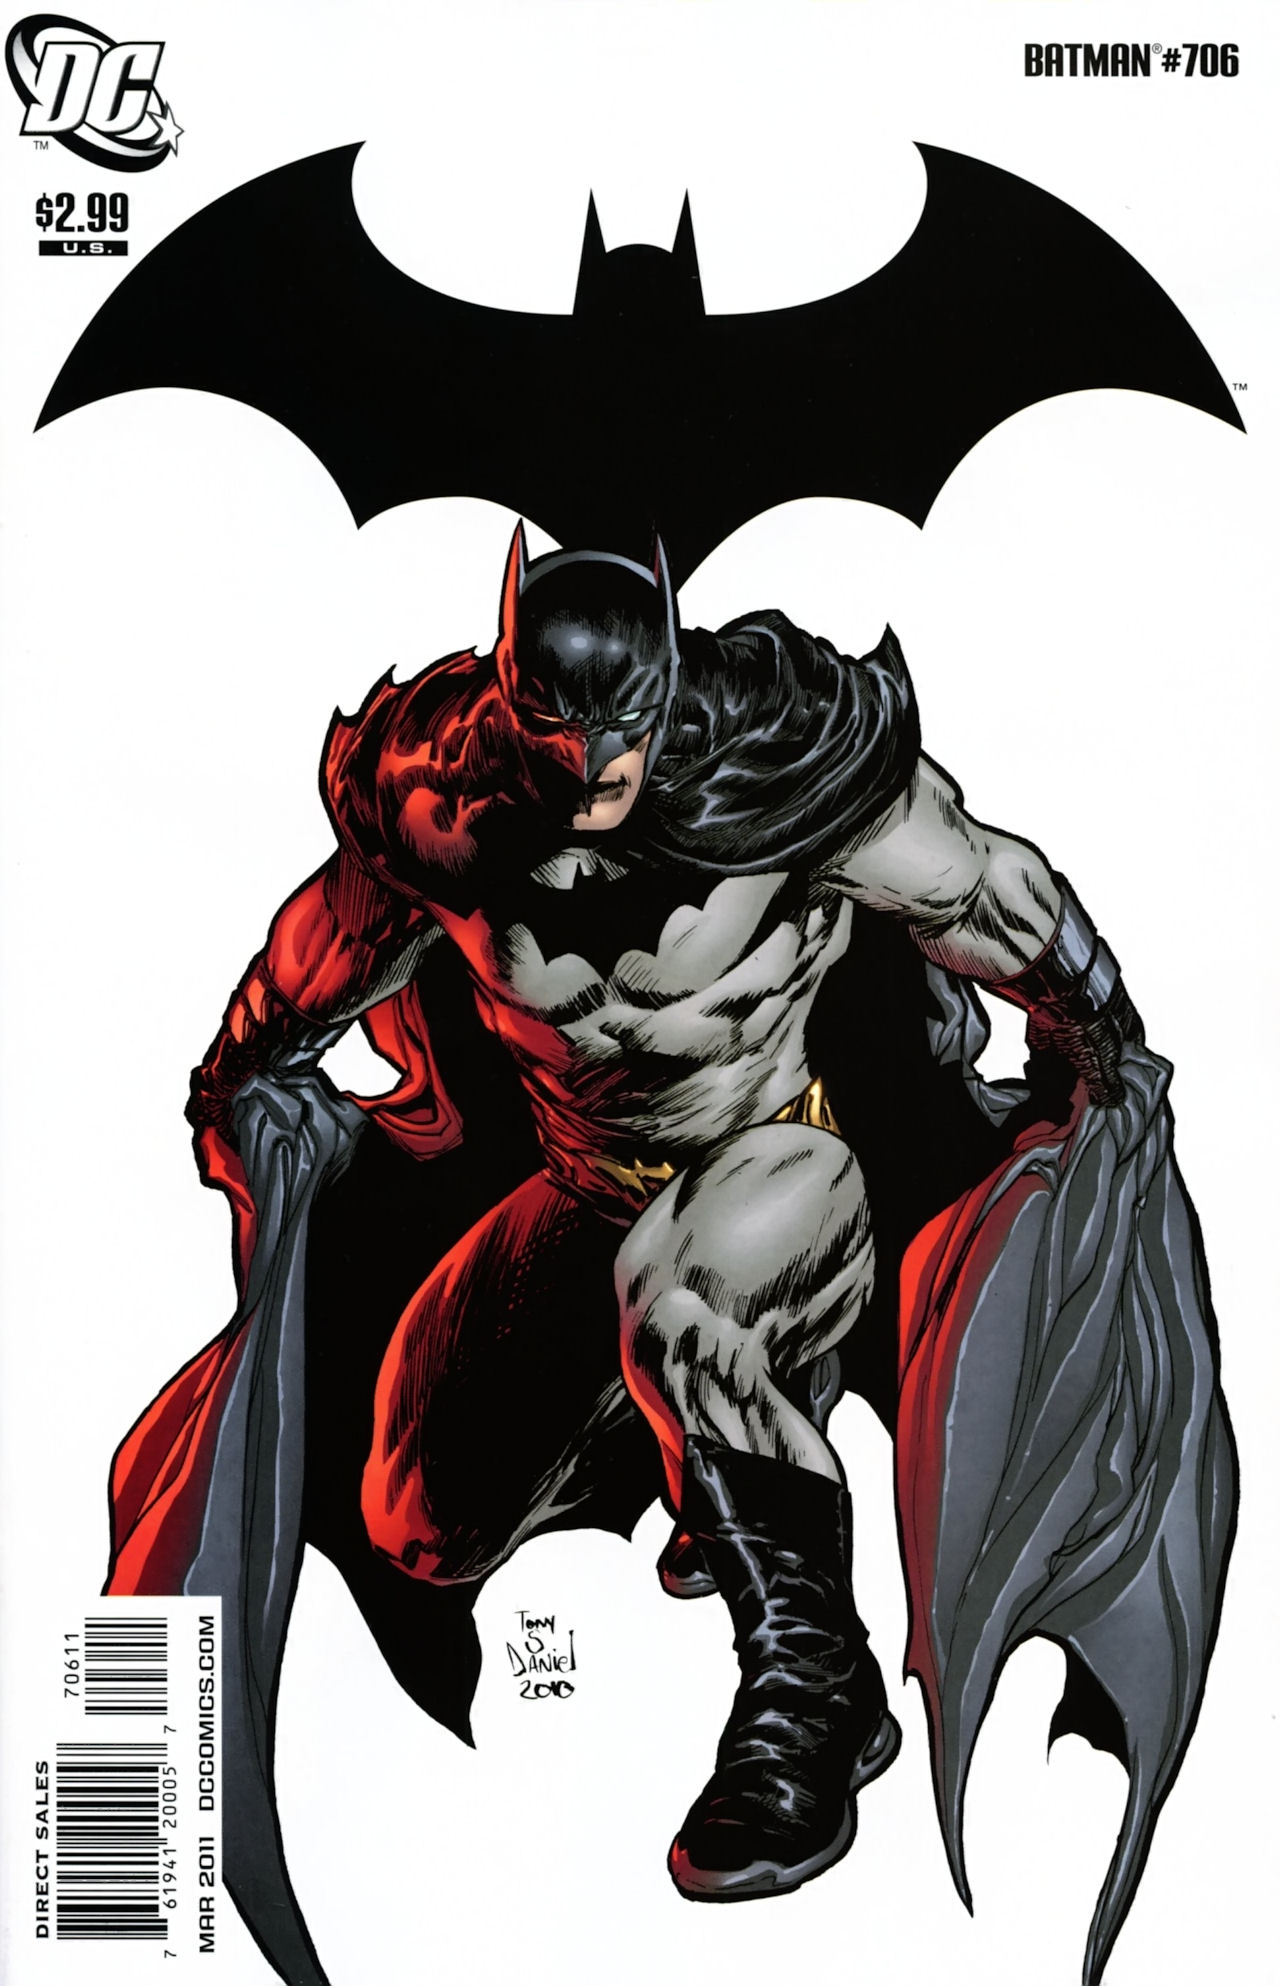 Batman Vol. 1 #706